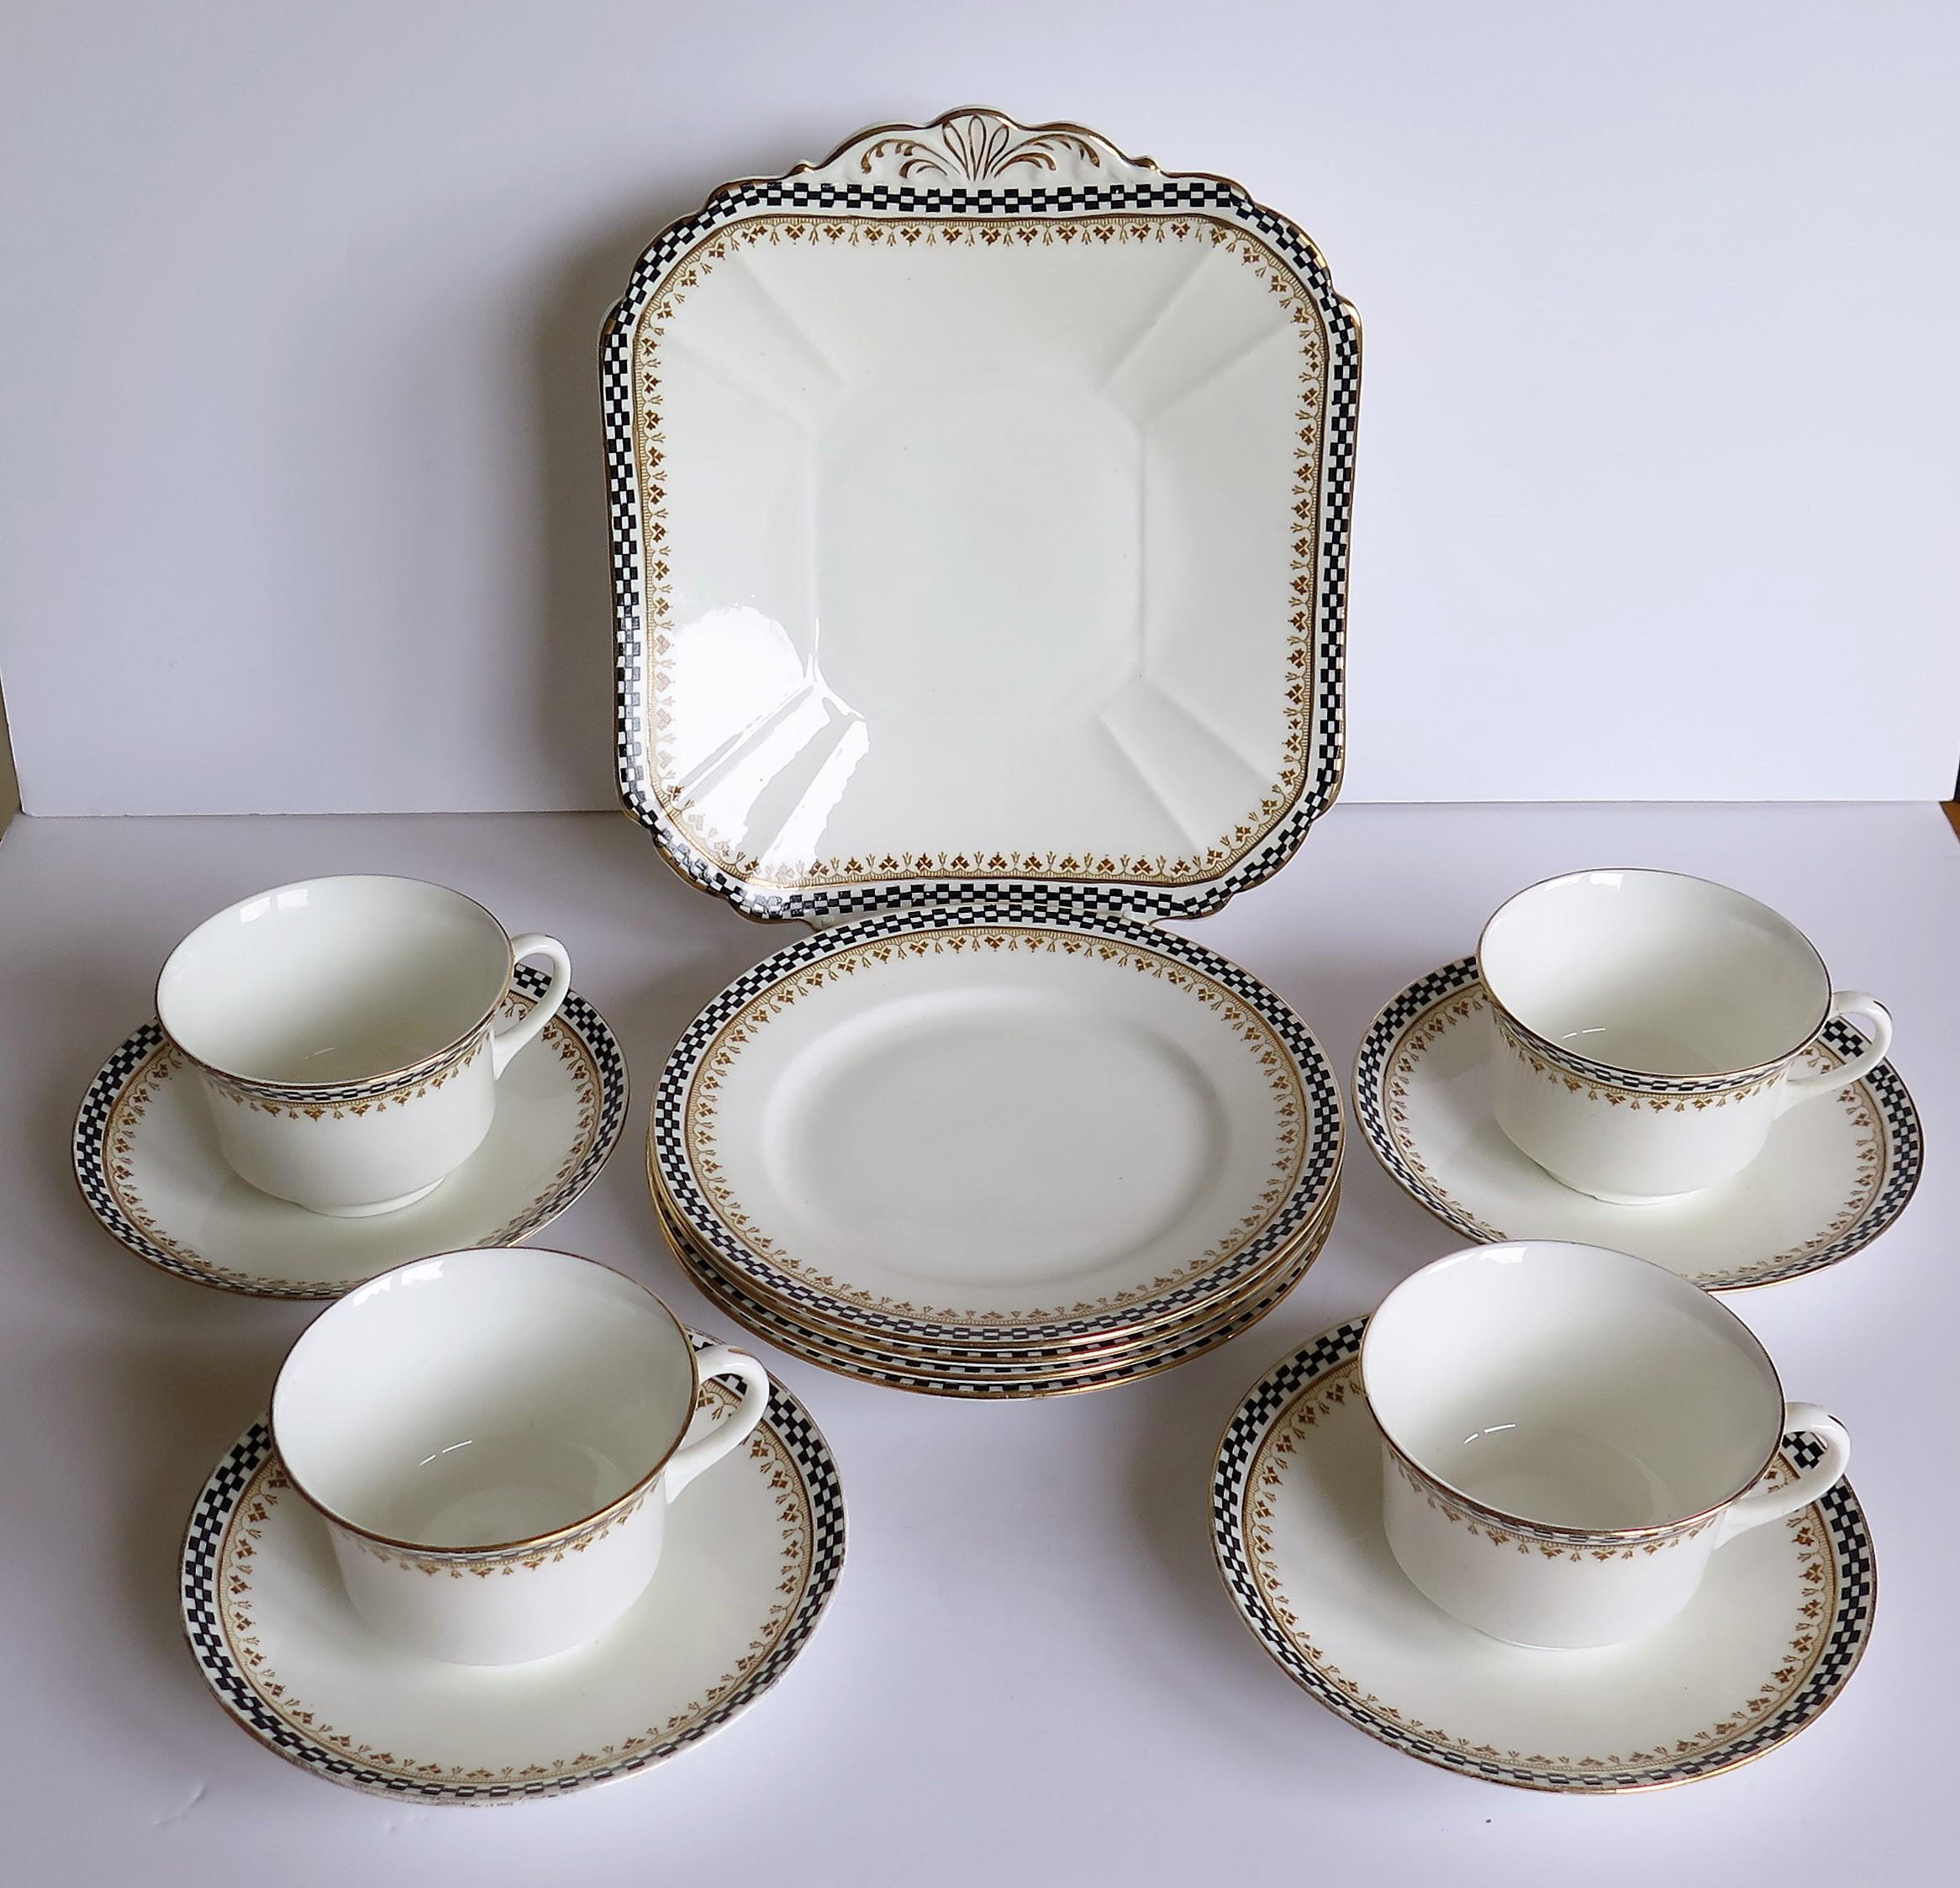 Art déco Service à thé de 13 pièces en porcelaine Shelley de la période Art Déco, ptn 10797, vers 1920 en vente